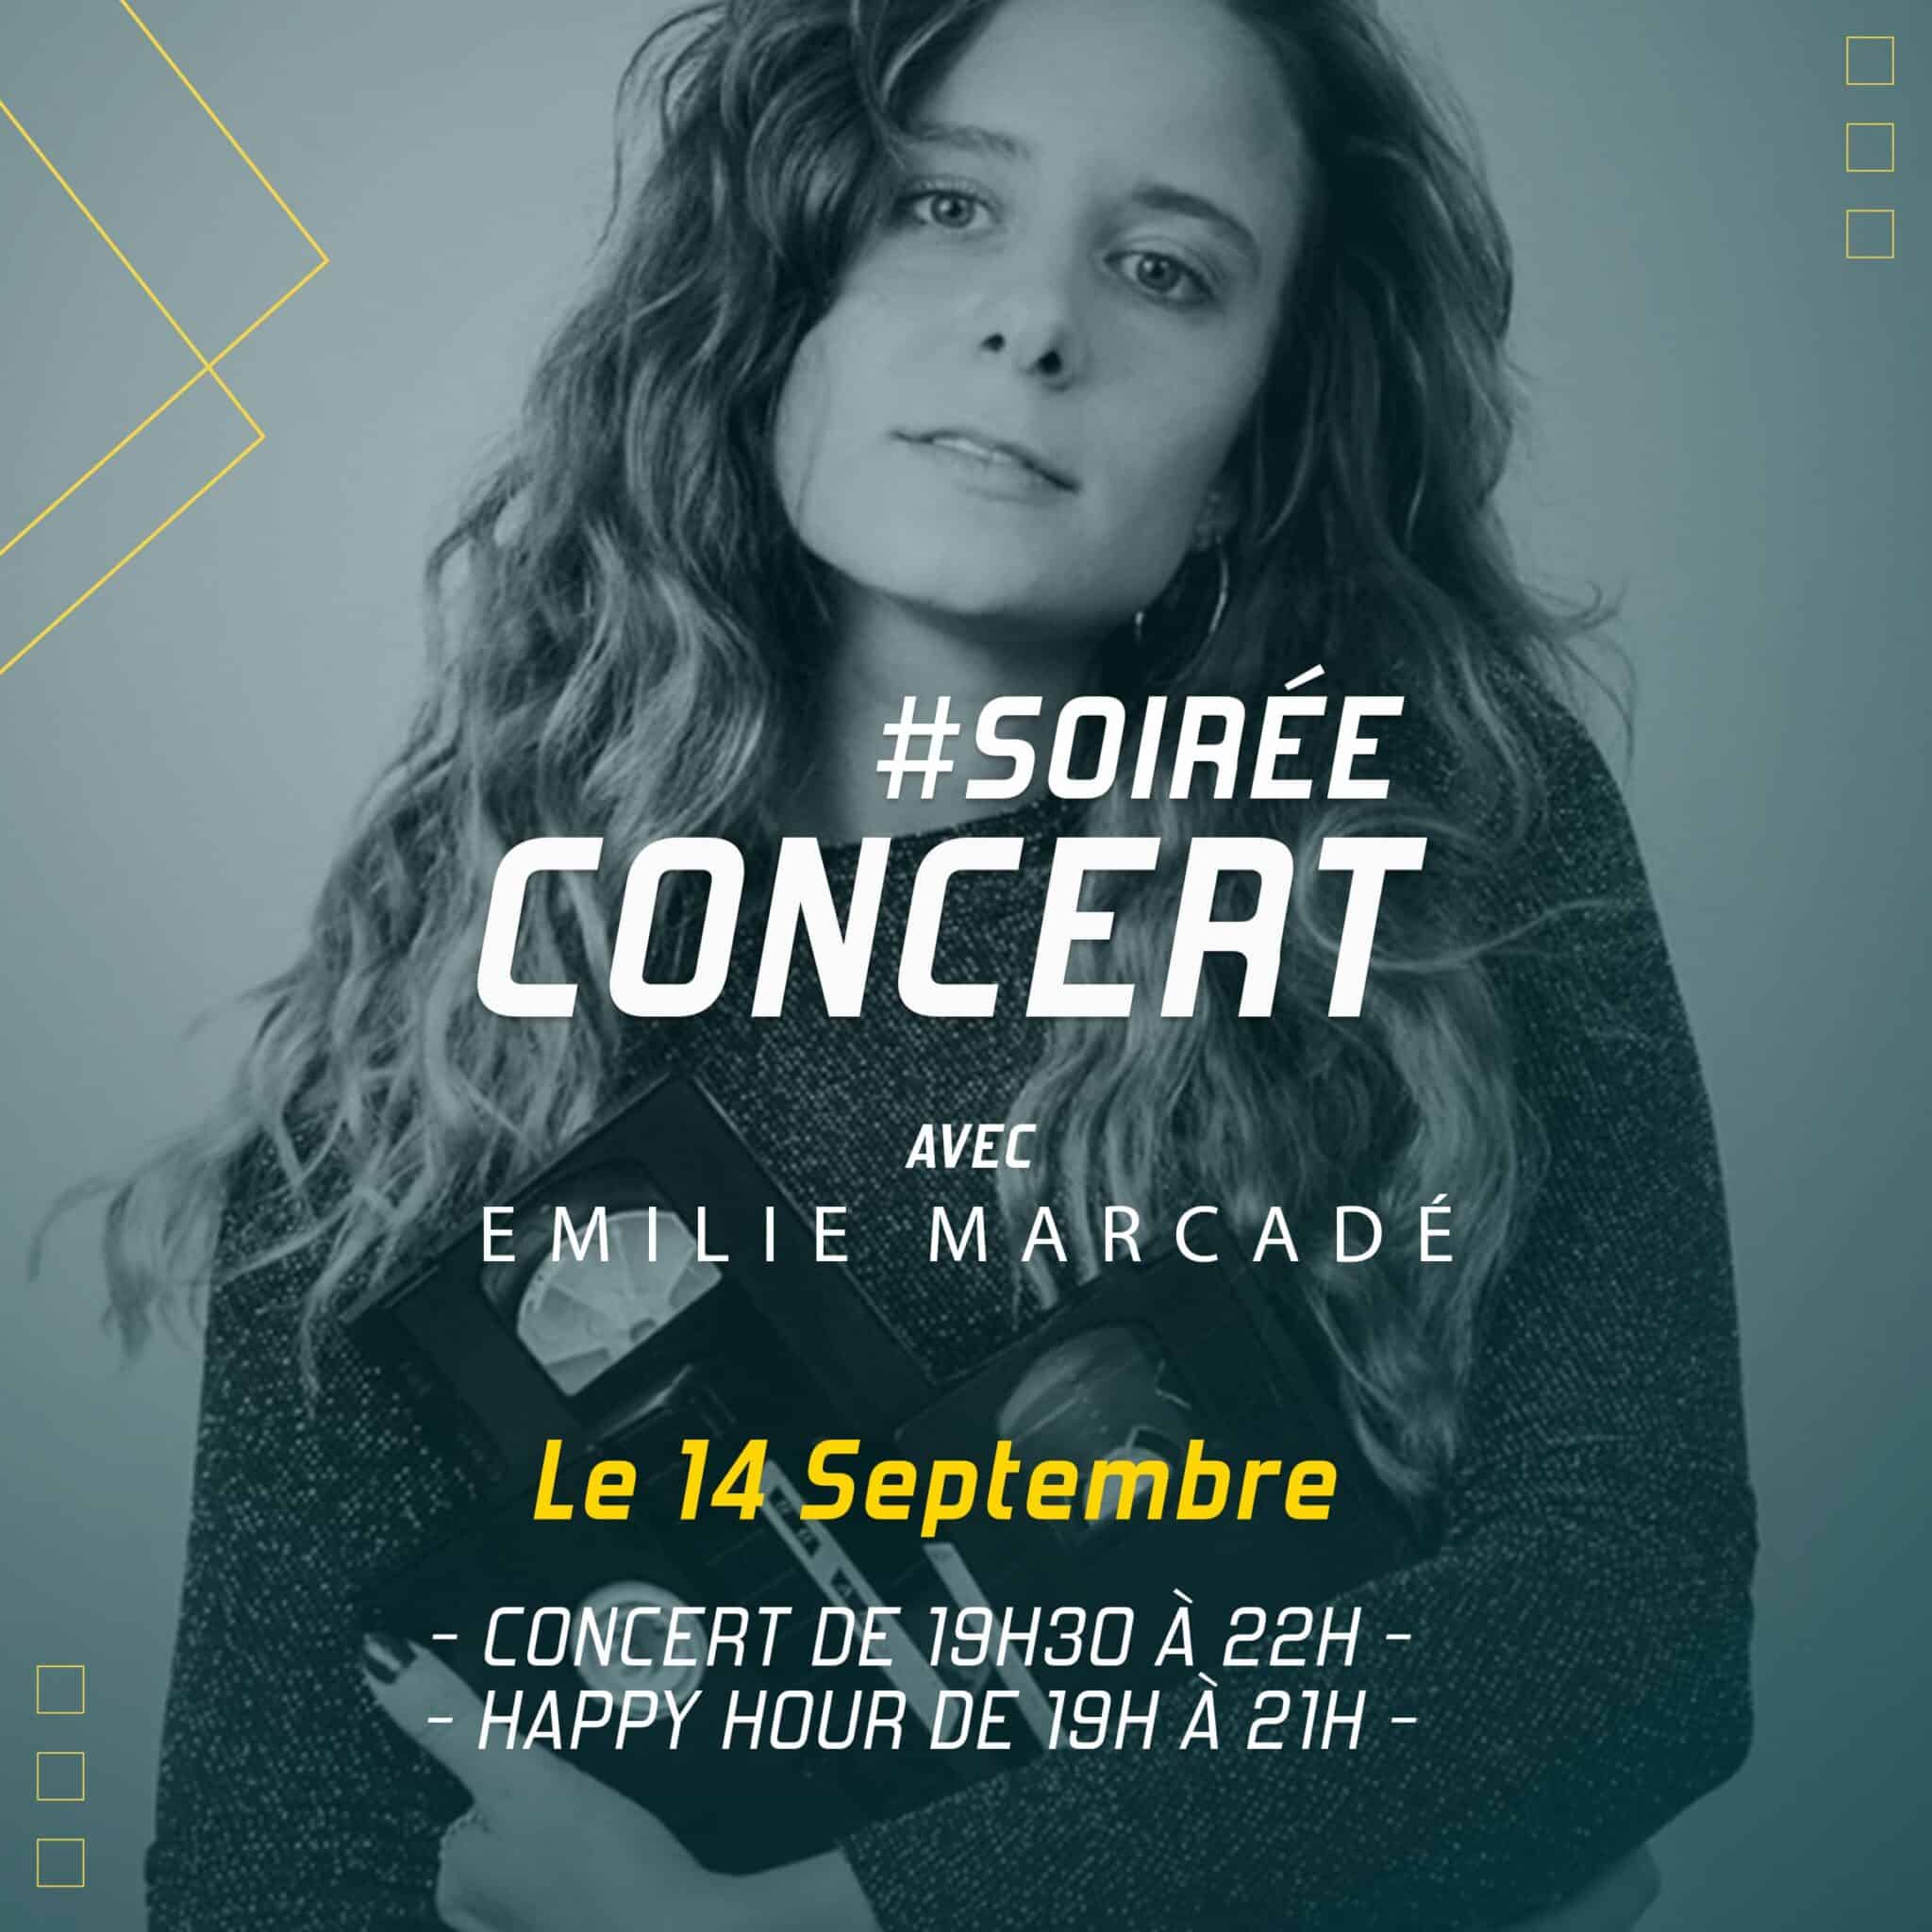 Concert à Vertical'Art Pigalle 14 septembre avec Emilie Marcadé